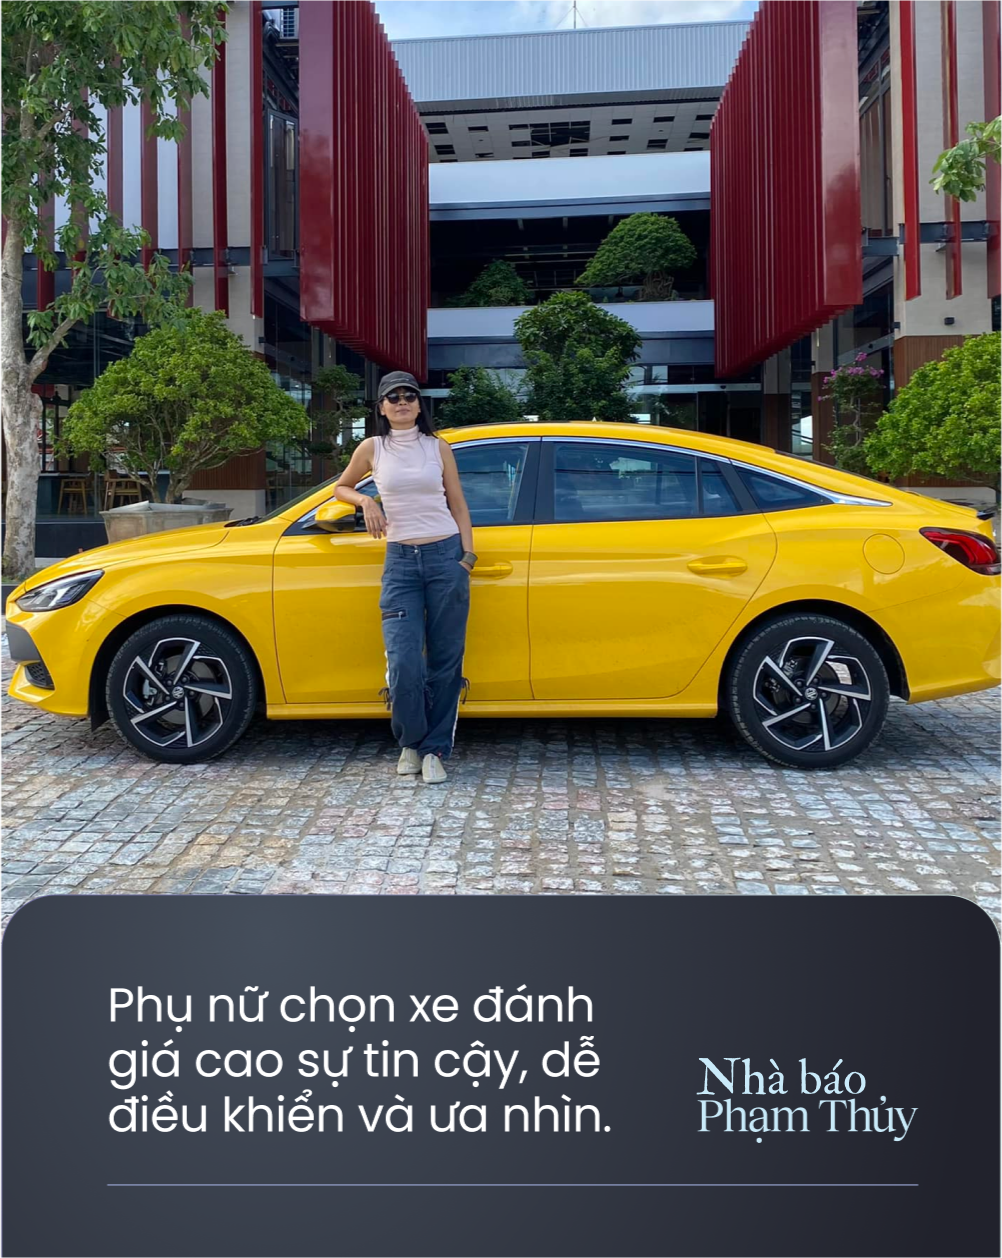 Nhà báo Phạm Thuỷ: 'Một số phụ nữ mua xe cho mình nhưng lại nhờ chồng, con chọn và xem xe dùm' - Ảnh 1.